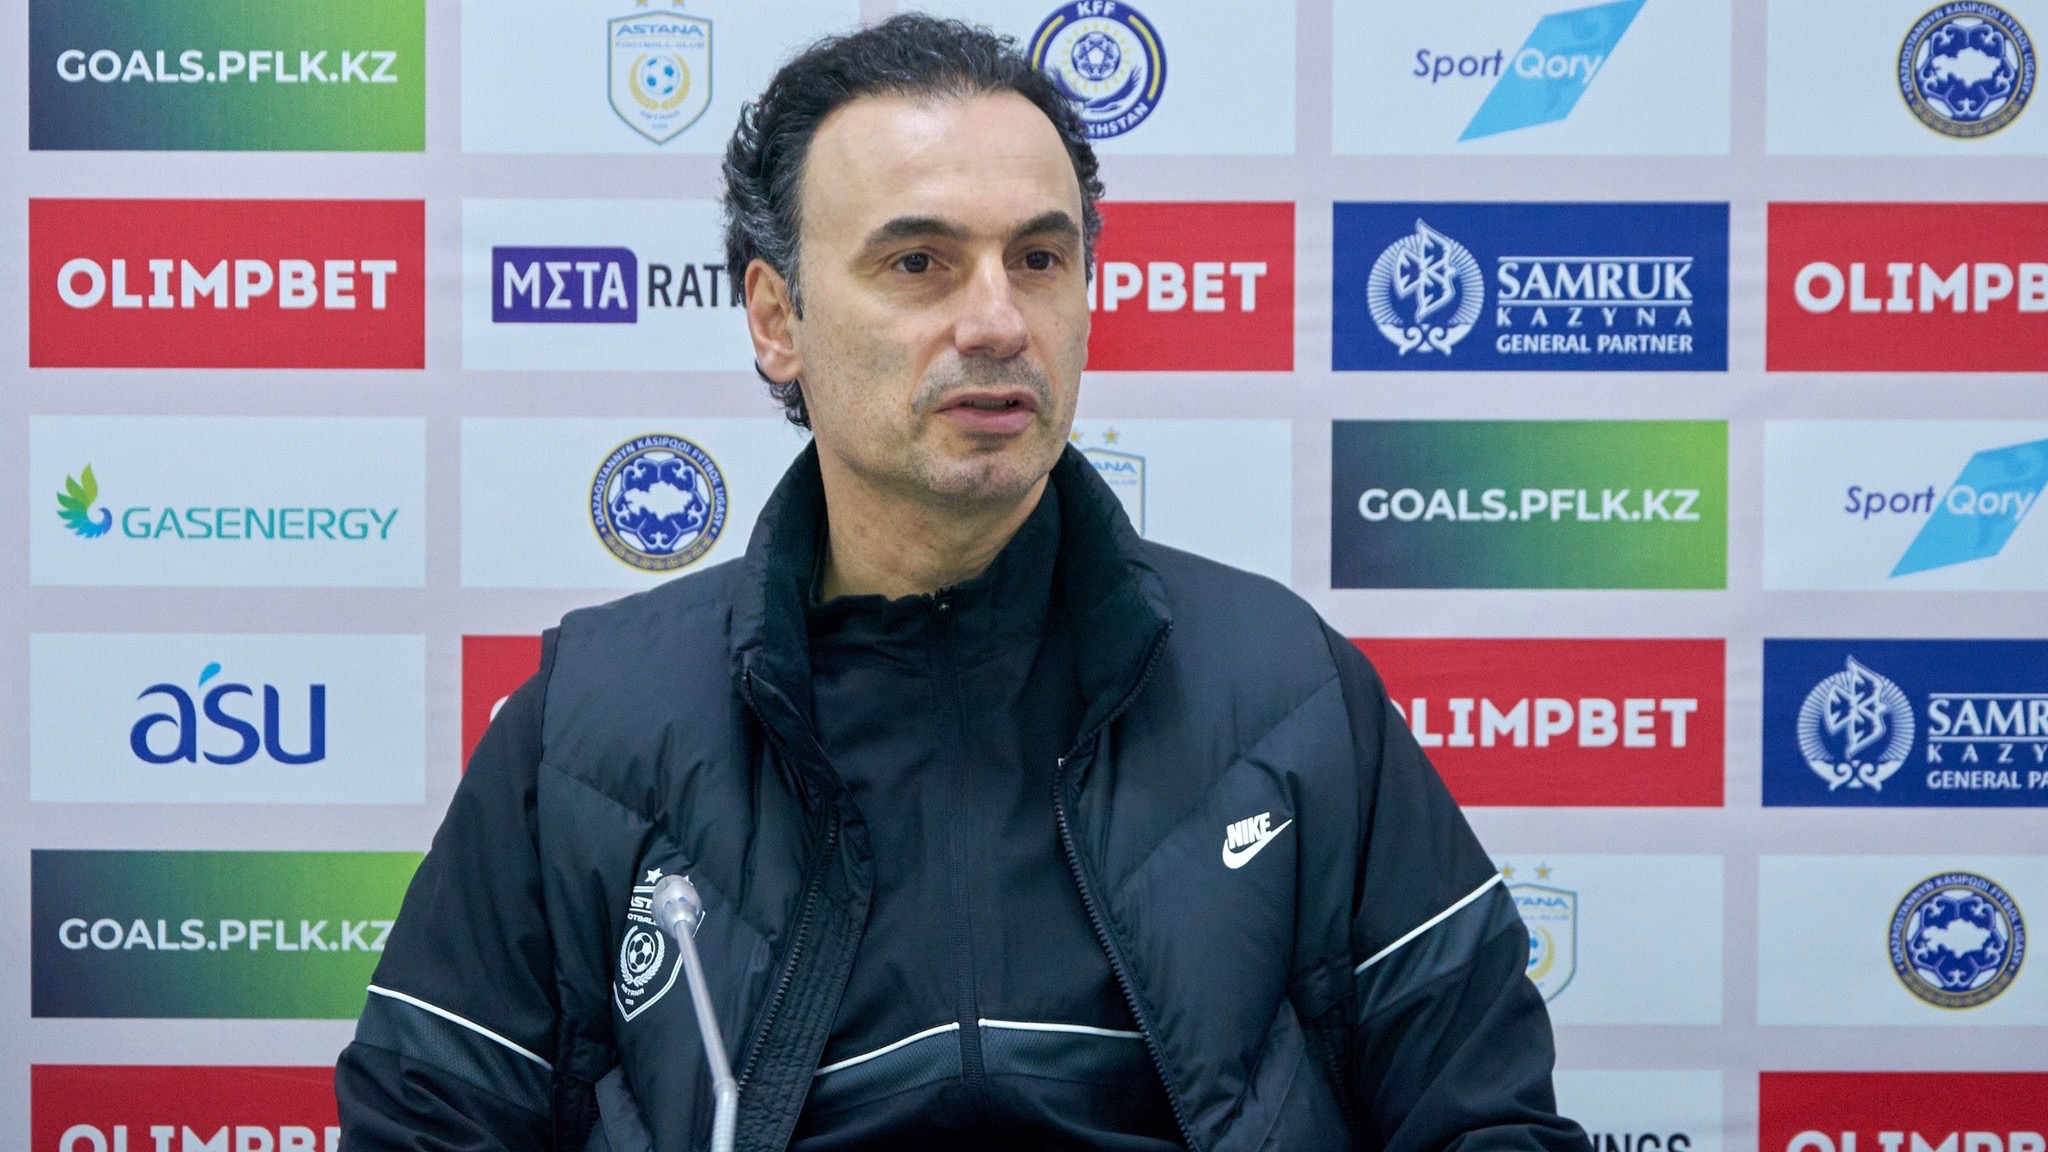 Главный тренер «Астаны» Бабаян прокомментировал победу над «Аксу» в перенесенном матче чемпионата Казахстана